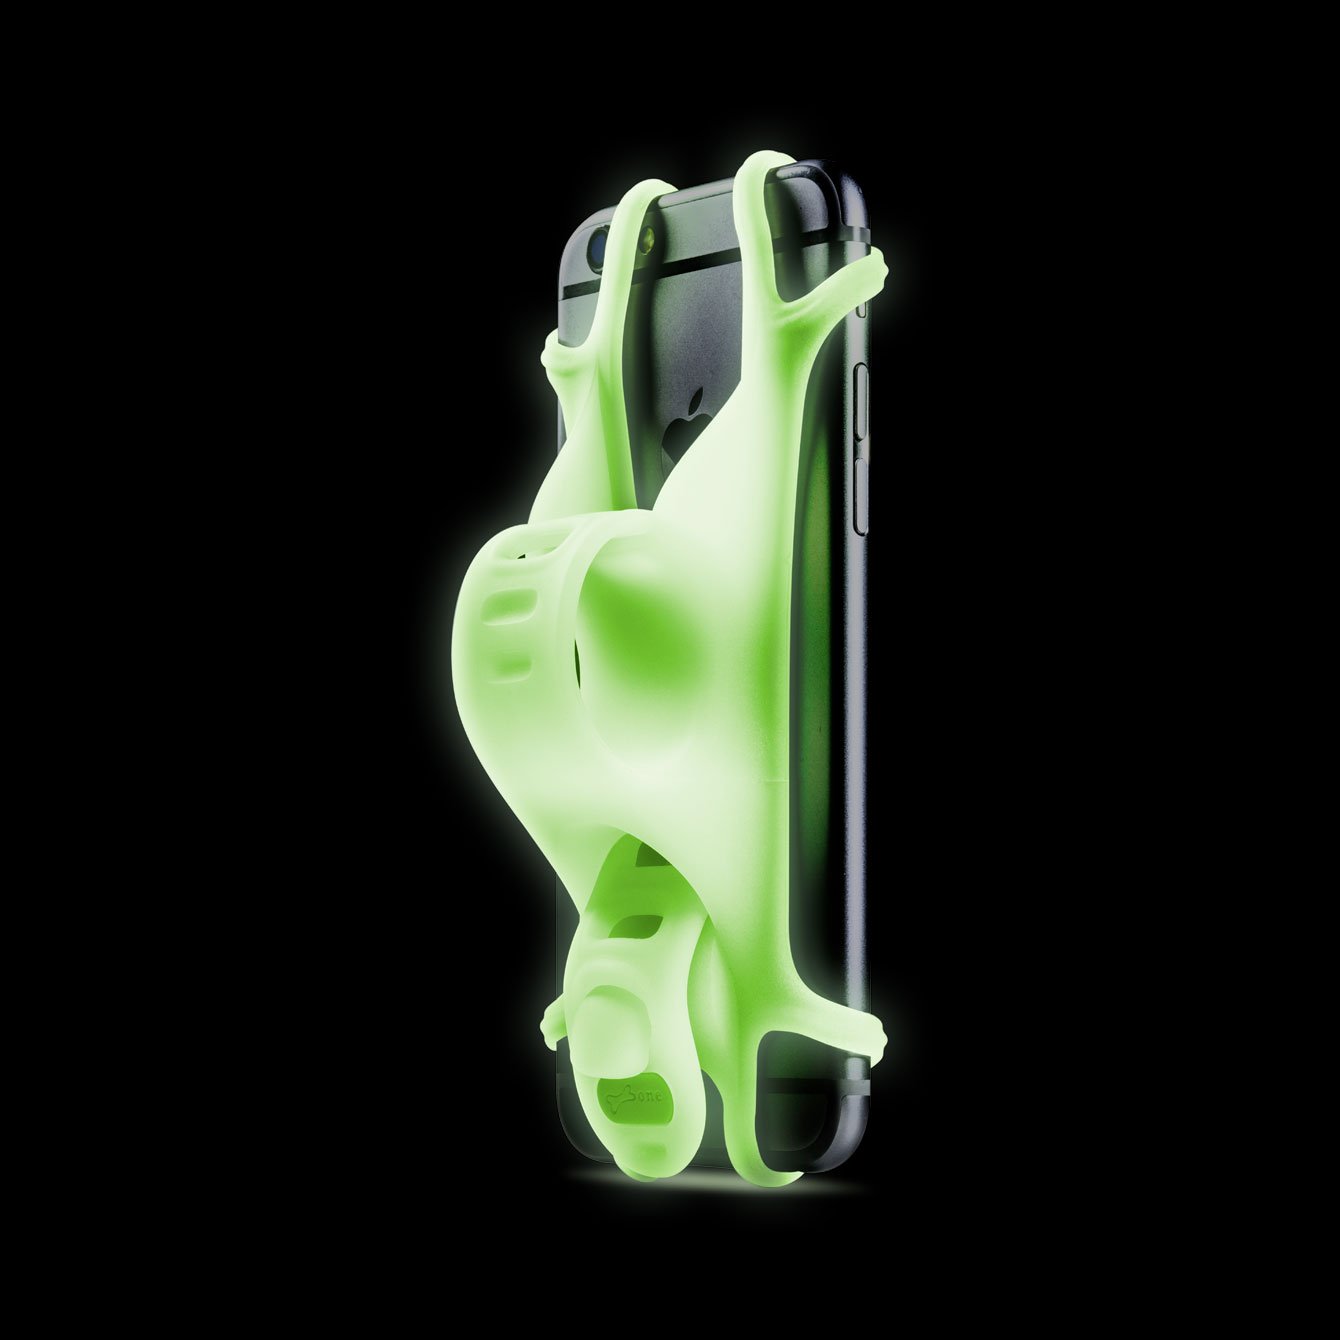 Держатель для смартфона Bone Collection BIKE TIE, силикон, на руль, 4.0'-6.0', люминисцентный зеленый, 07-150014 держатель для телефона rockbros на руль велосипеда силиконовый вращение на 360 градусов lf436